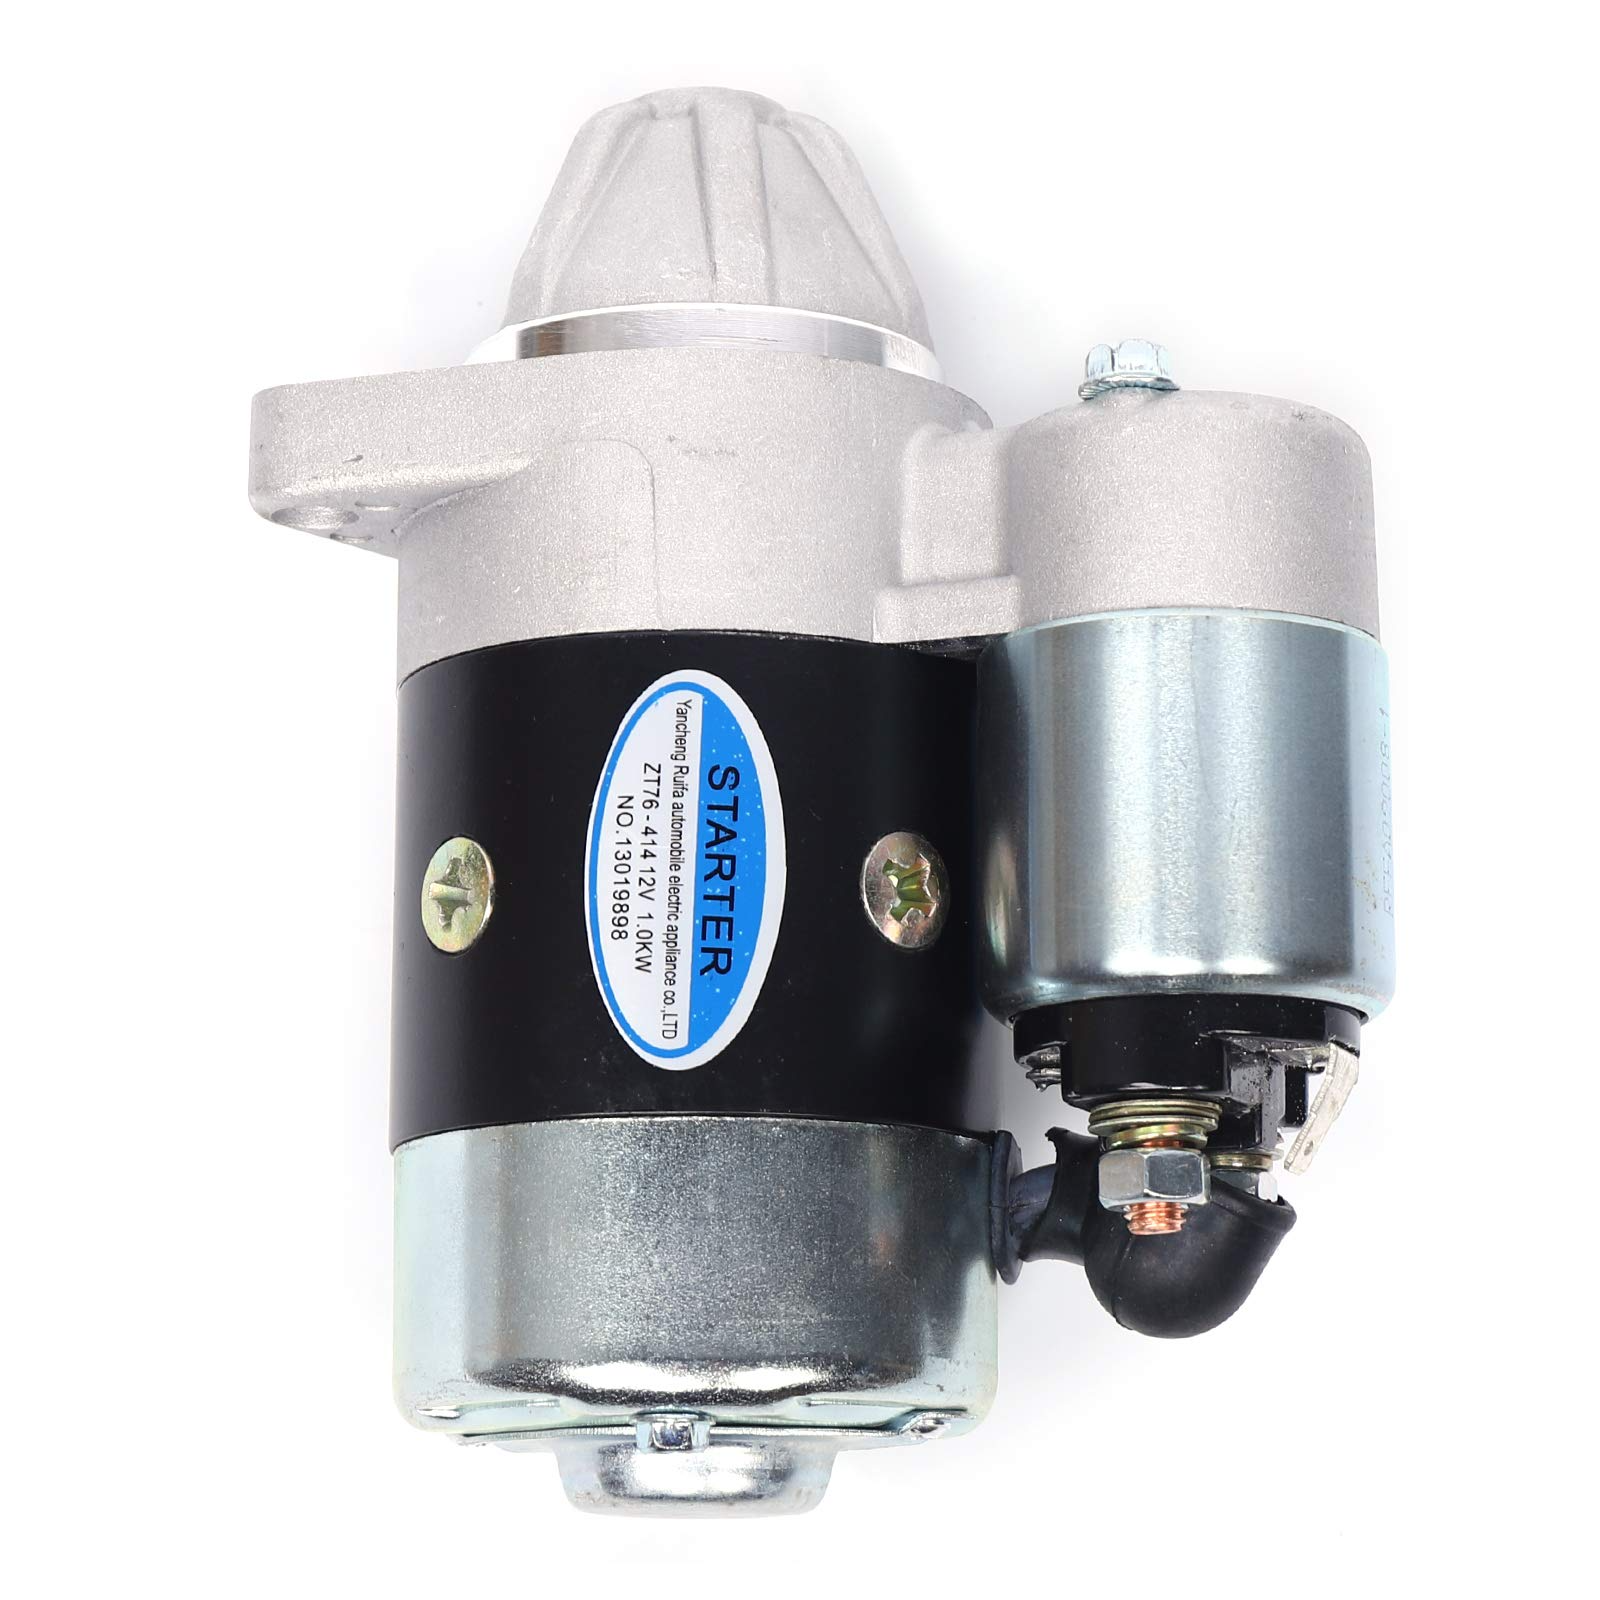 CNCEST Pompe diesel auto-amorçante 230 V/12 V 45 l/min